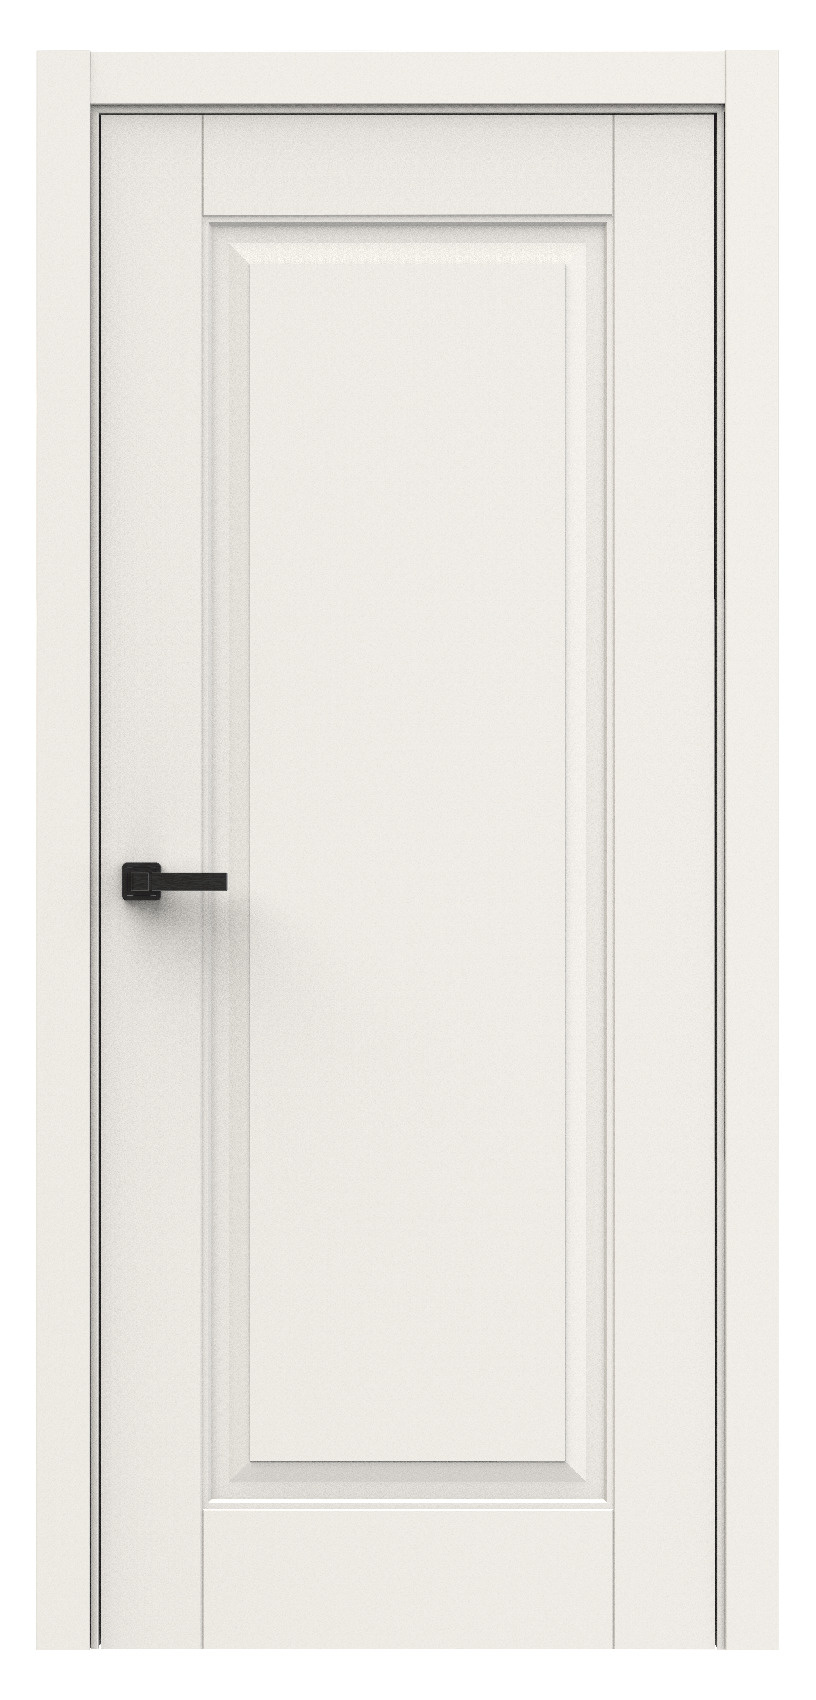 Questdoors Межкомнатная дверь QL5, арт. 18005 - фото №1